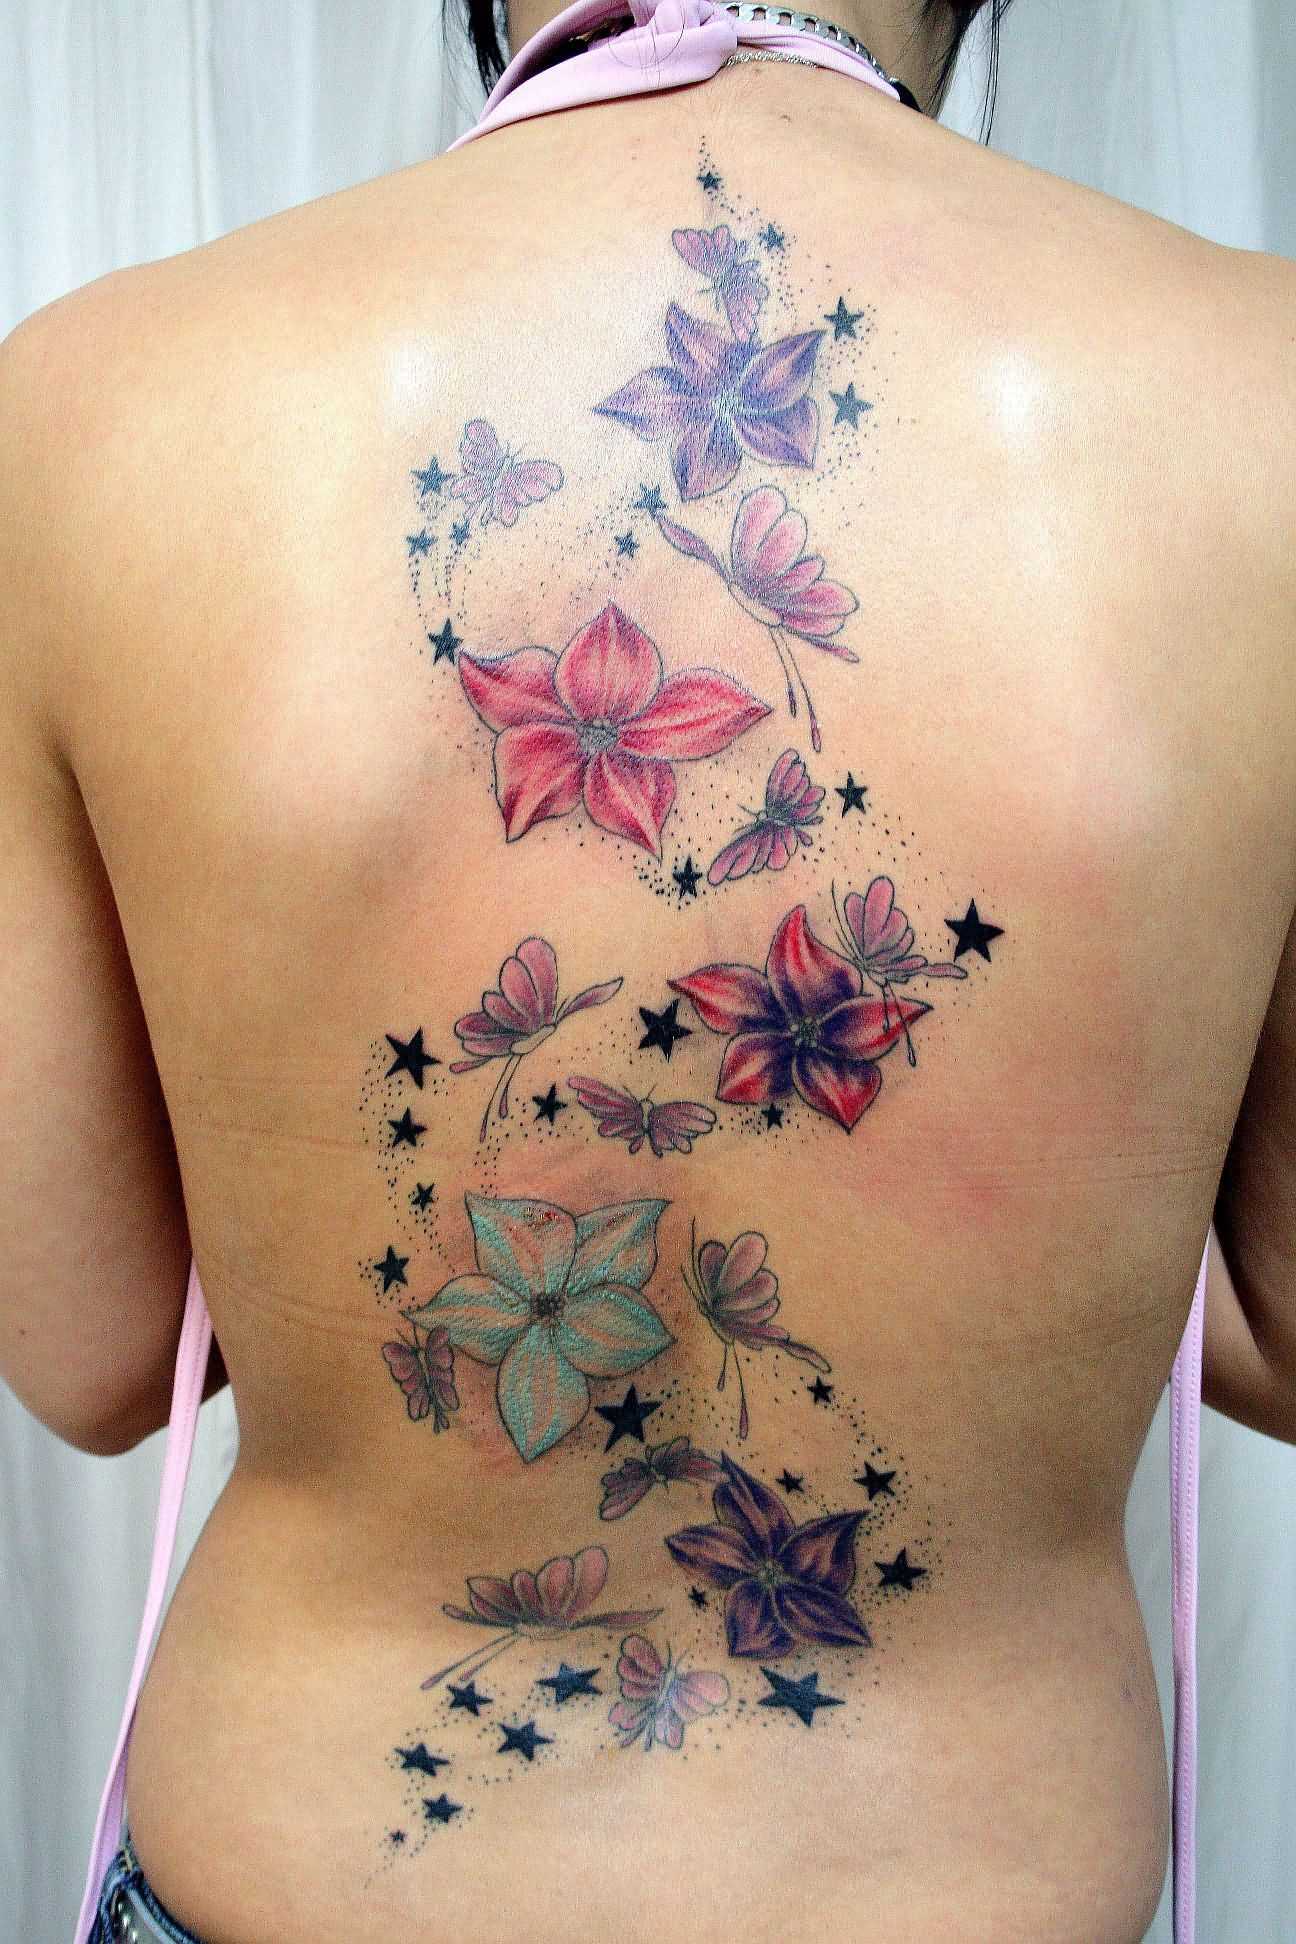 Tatuagem nas costas de uma menina - cores akvilegii e borboletas